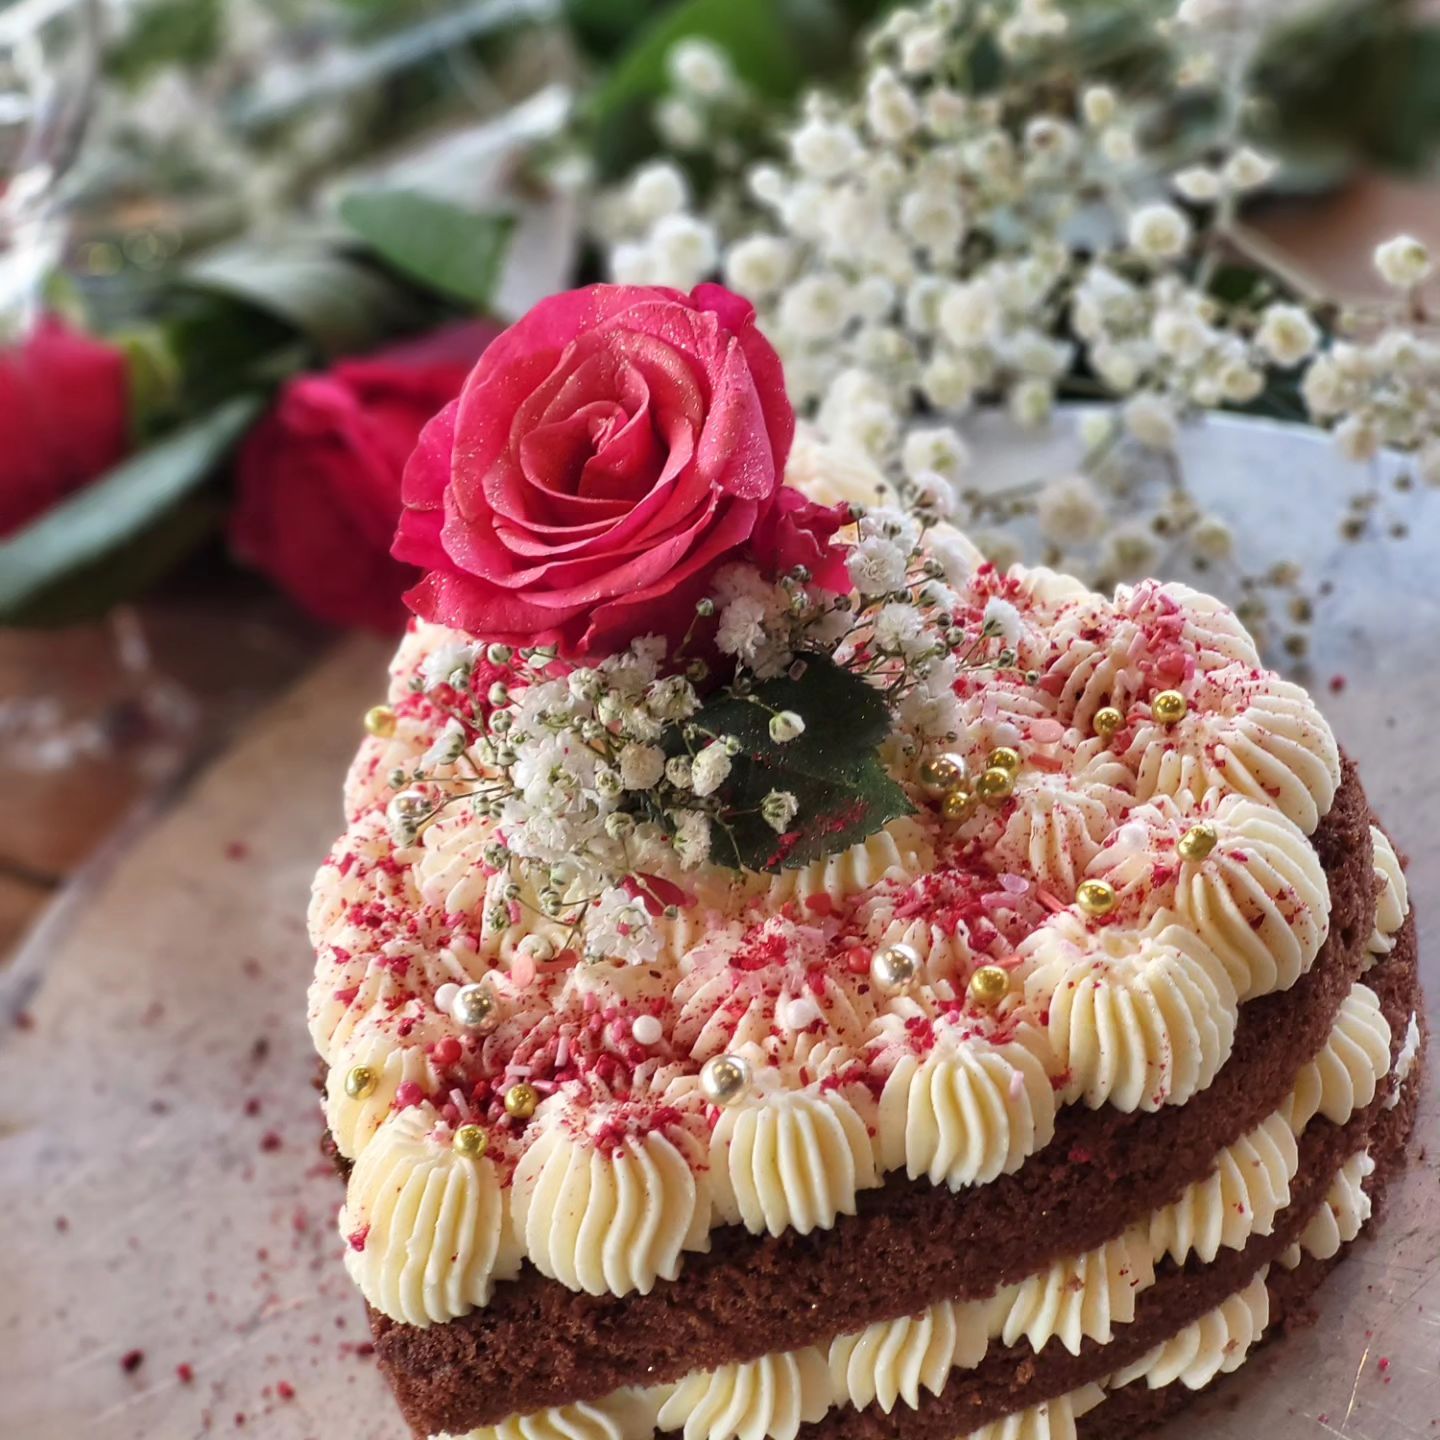 Verschenkt euer Herz!❤️🫶❤️
Bestellt bei uns euer Valentinsherz für eure Lieben. 
Mit Liebe gebacken und dekoriert....